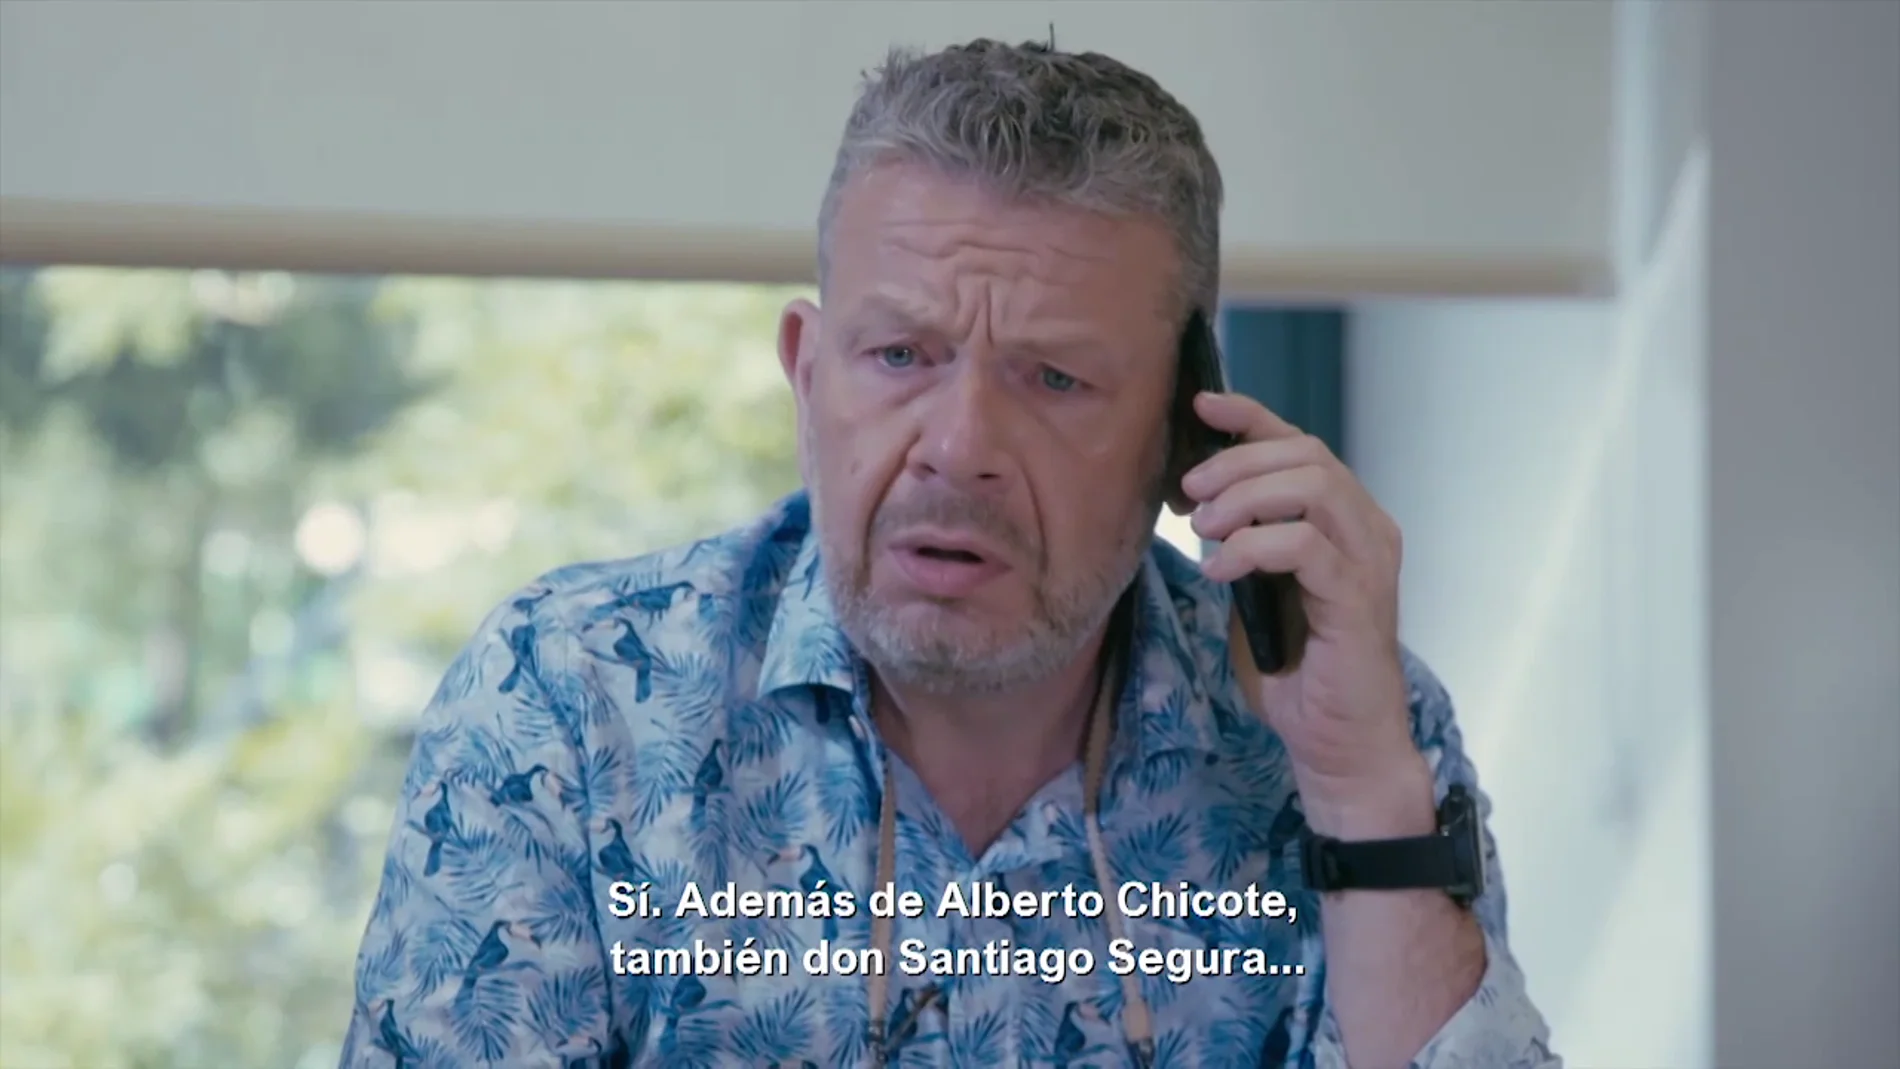 La tensa llamada de Alberto Chicote a Reduslim: "En cuanto le cuelgue voy a ir a la comisaría"